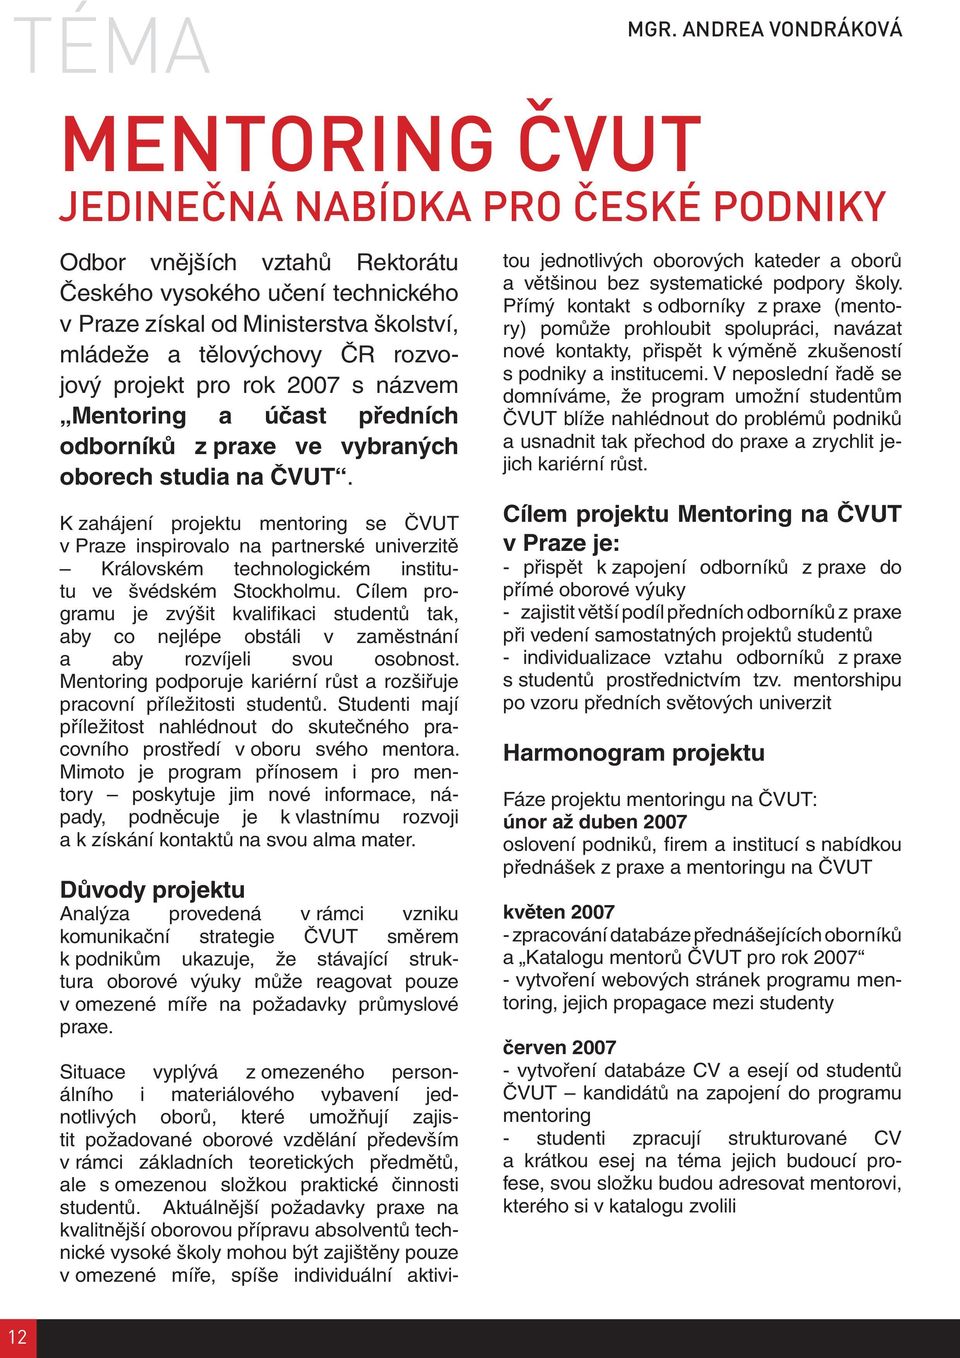 ČR rozvojový projekt pro rok 2007 s názvem Mentoring a účast předních odborníků z praxe ve vybraných oborech studia na ČVUT.